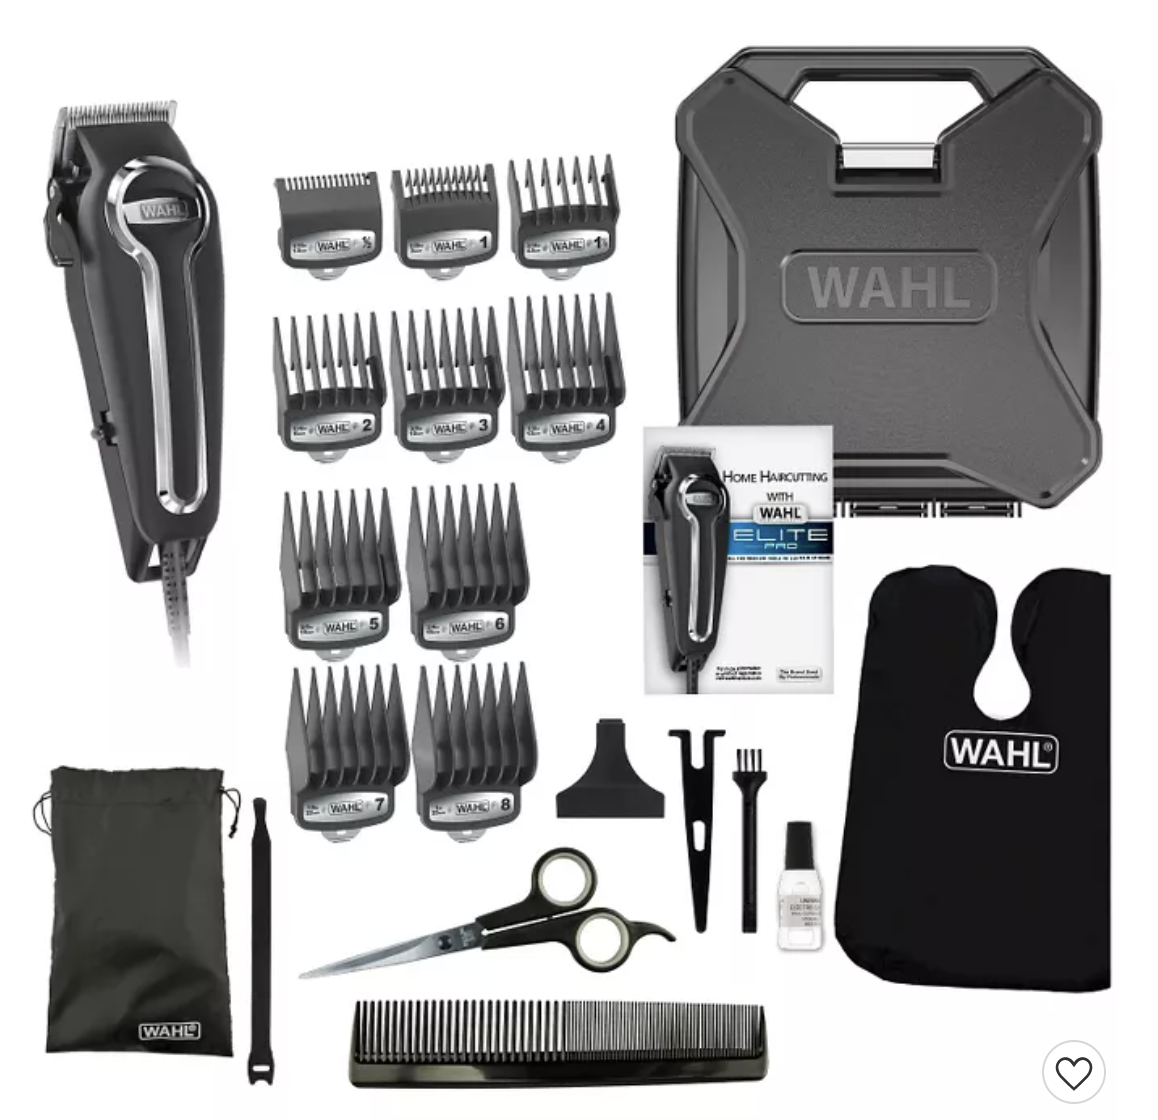 wahl elite pro haircutting kit target